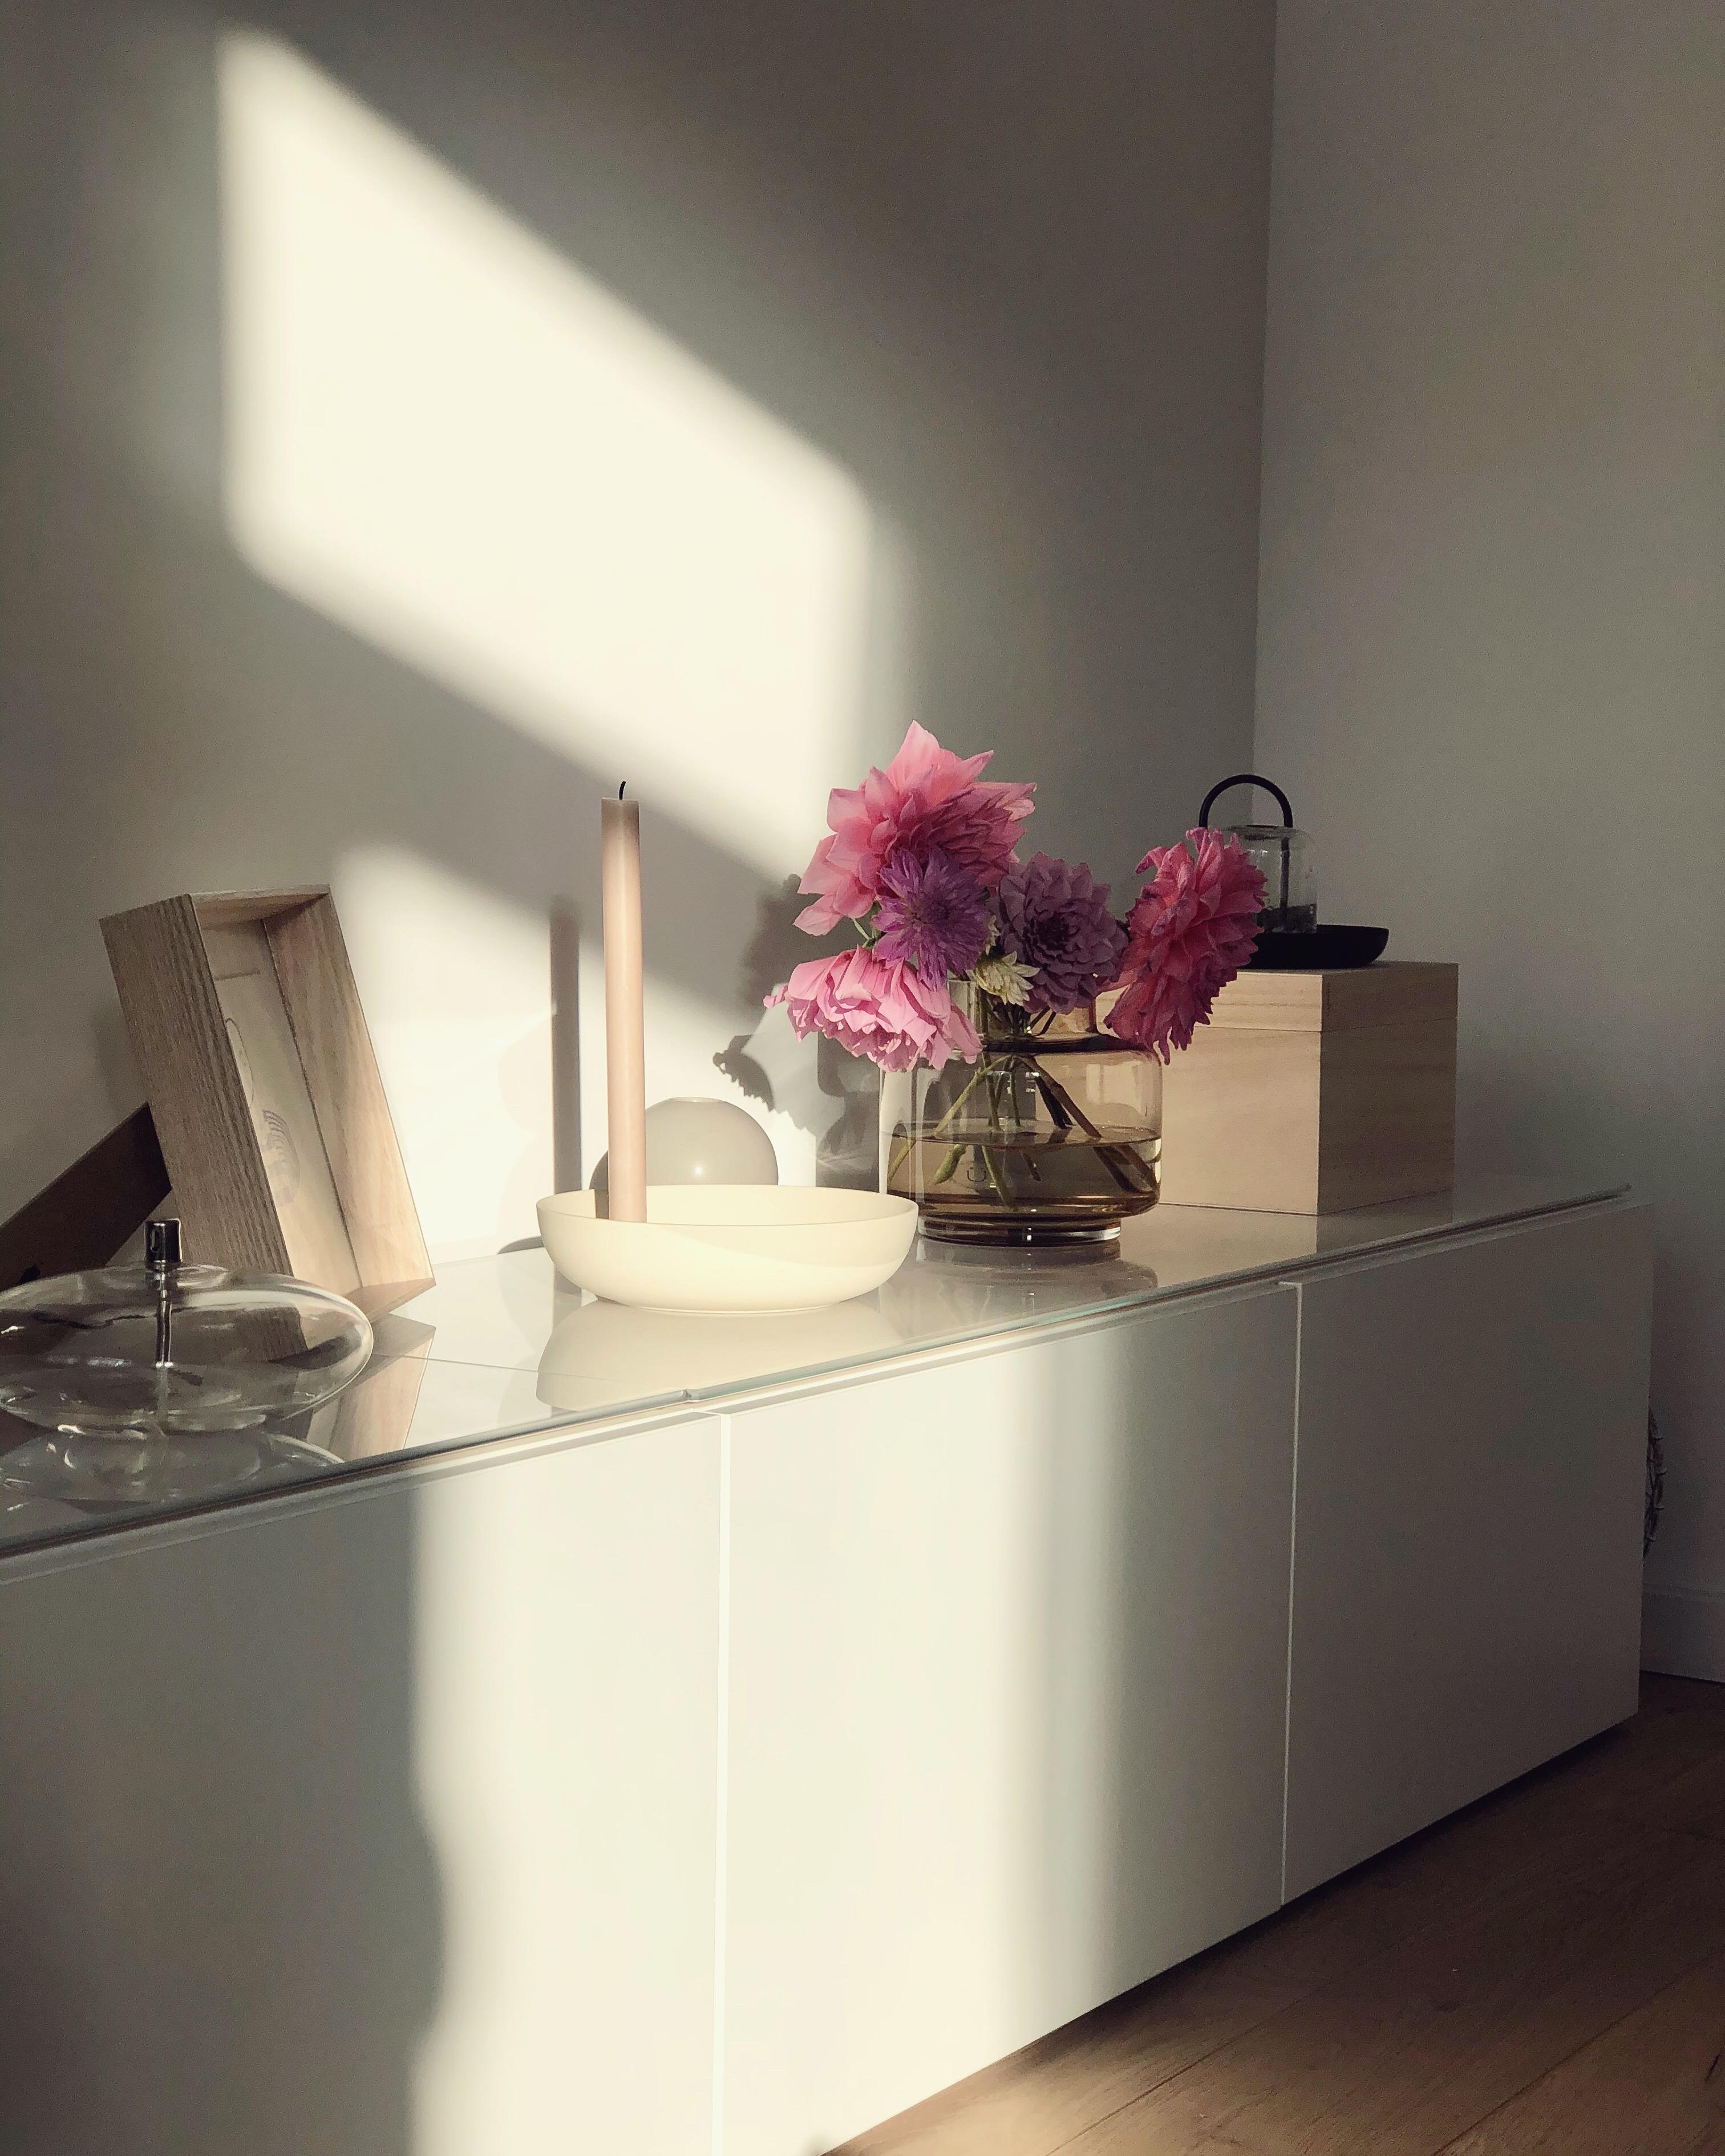 Schönes #Licht gab‘s heute 😉🍂✨
#Herbst #Interior #Livingroom #Wohnzimmer #Dekoideen #Nordicliving #Sideboard #Flowers